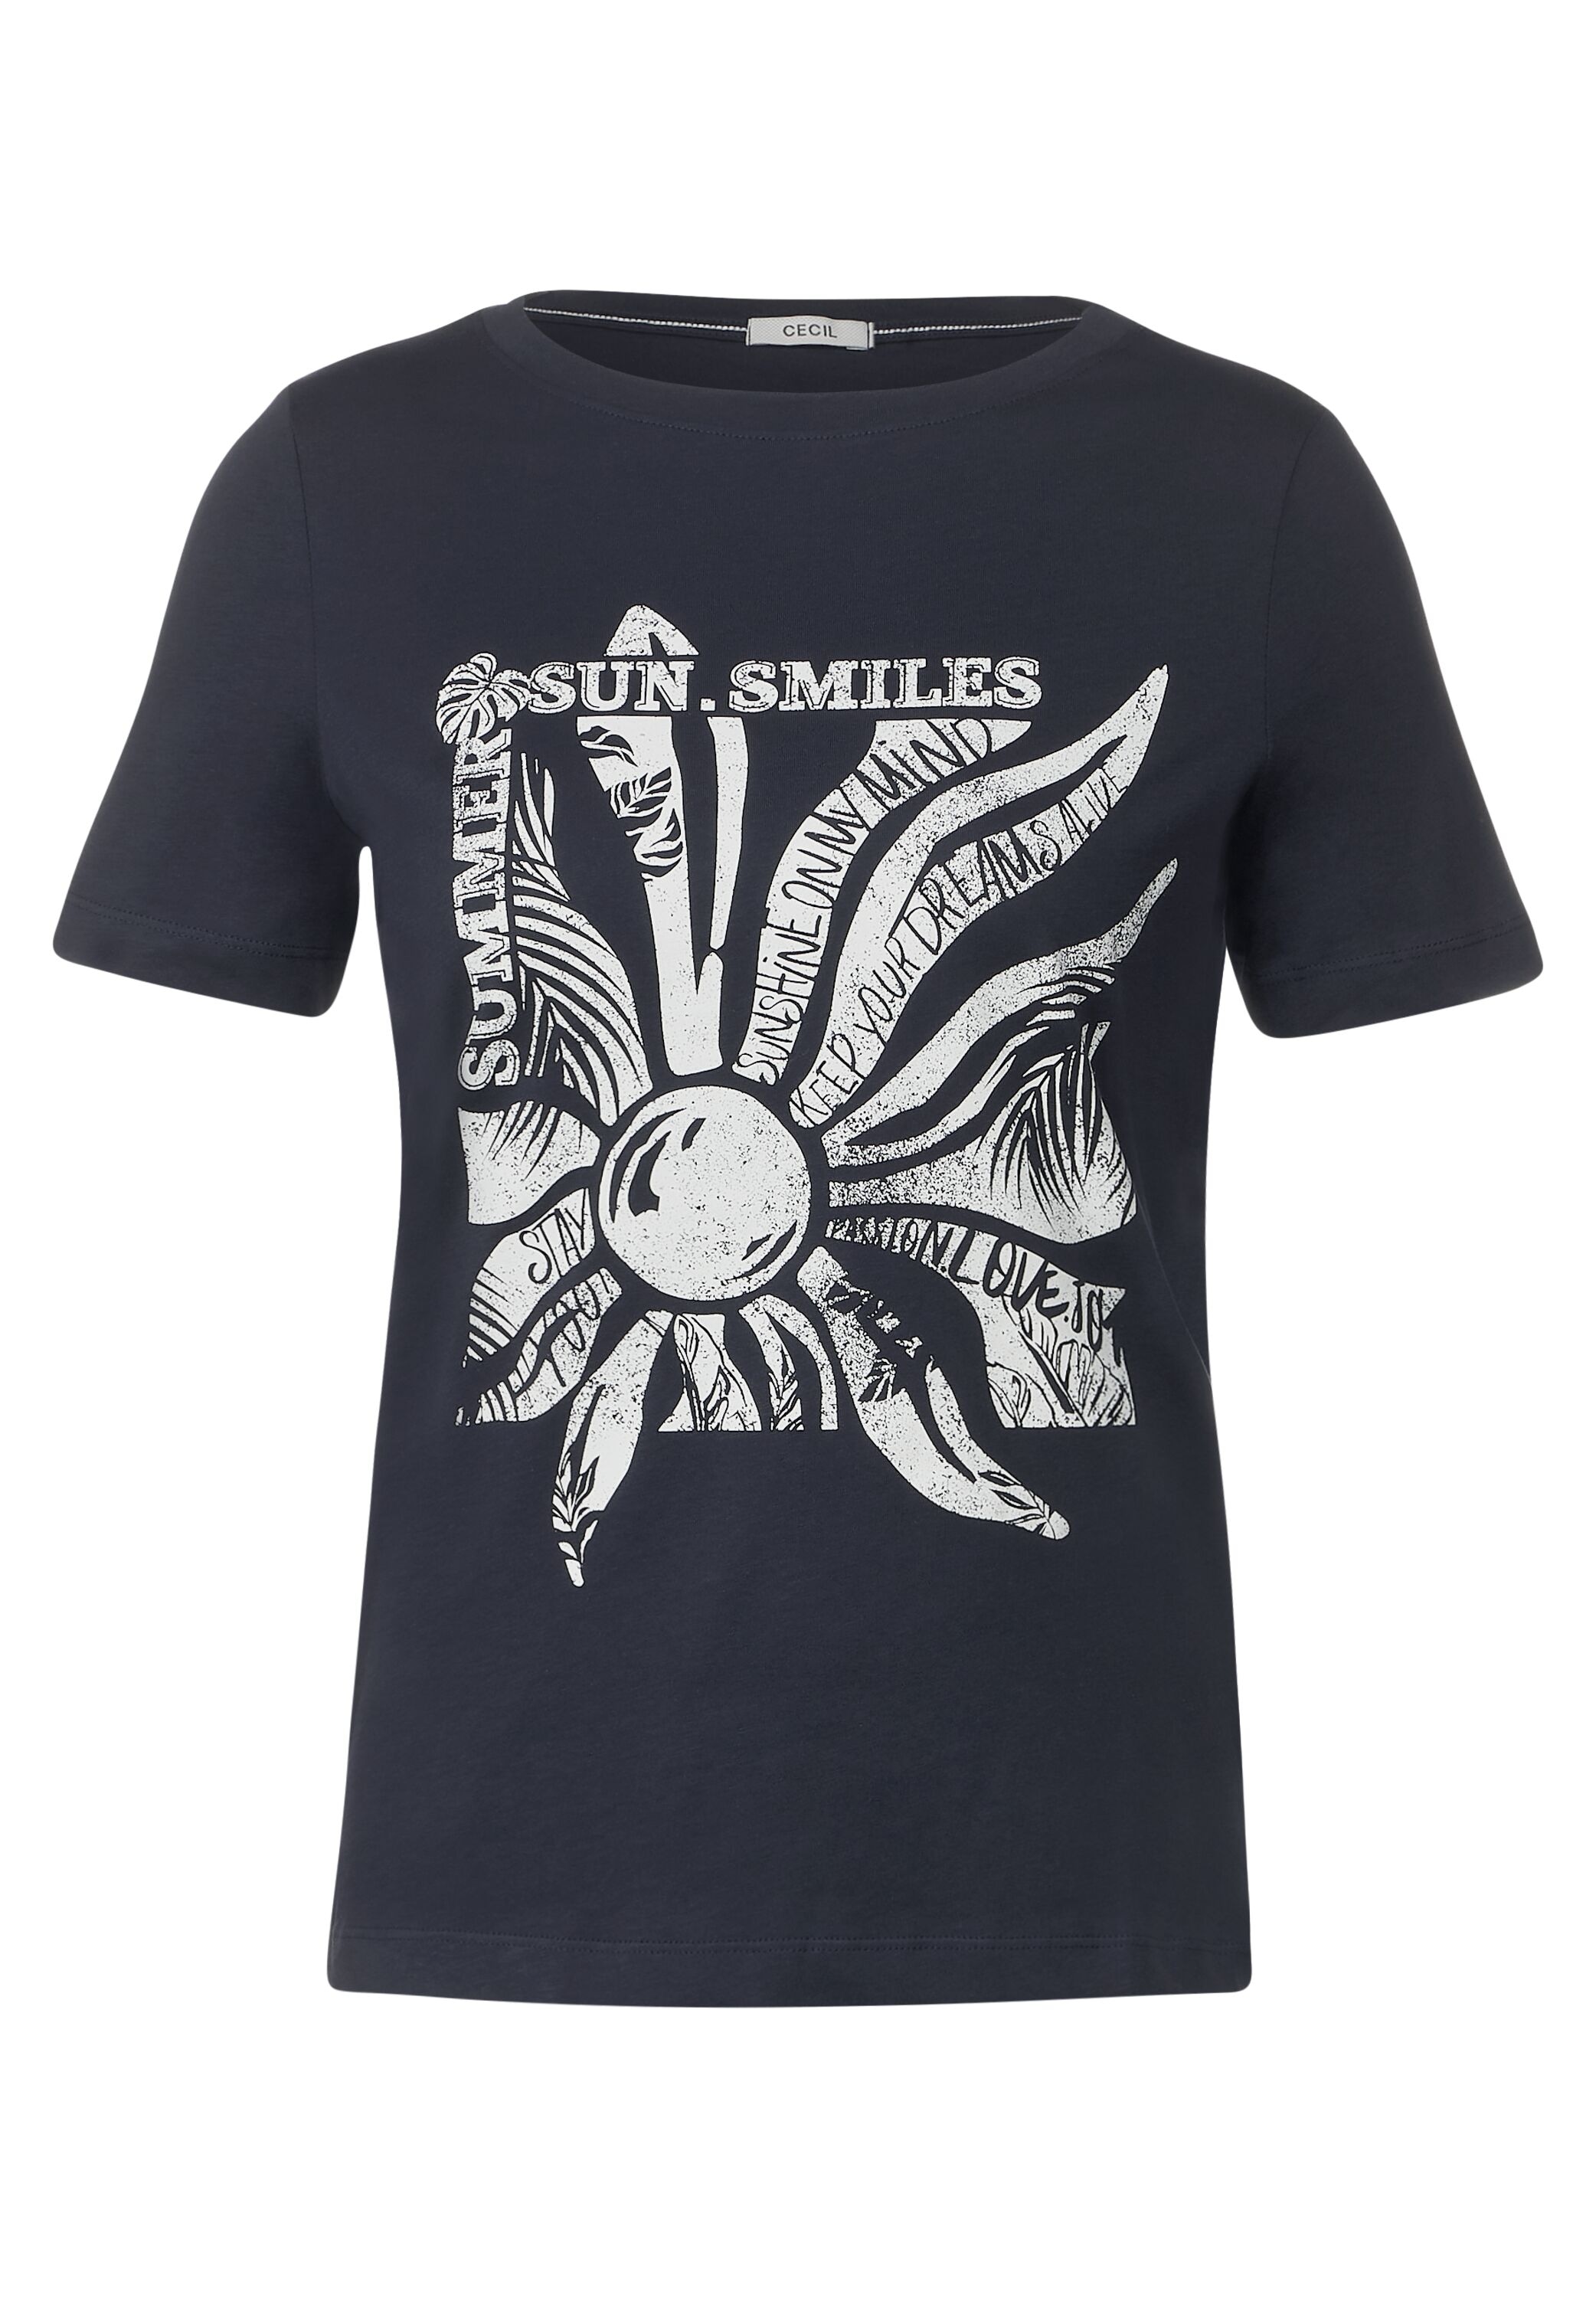 Cecil T-Shirt, mit U-Boot-Ausschnitt shoppen